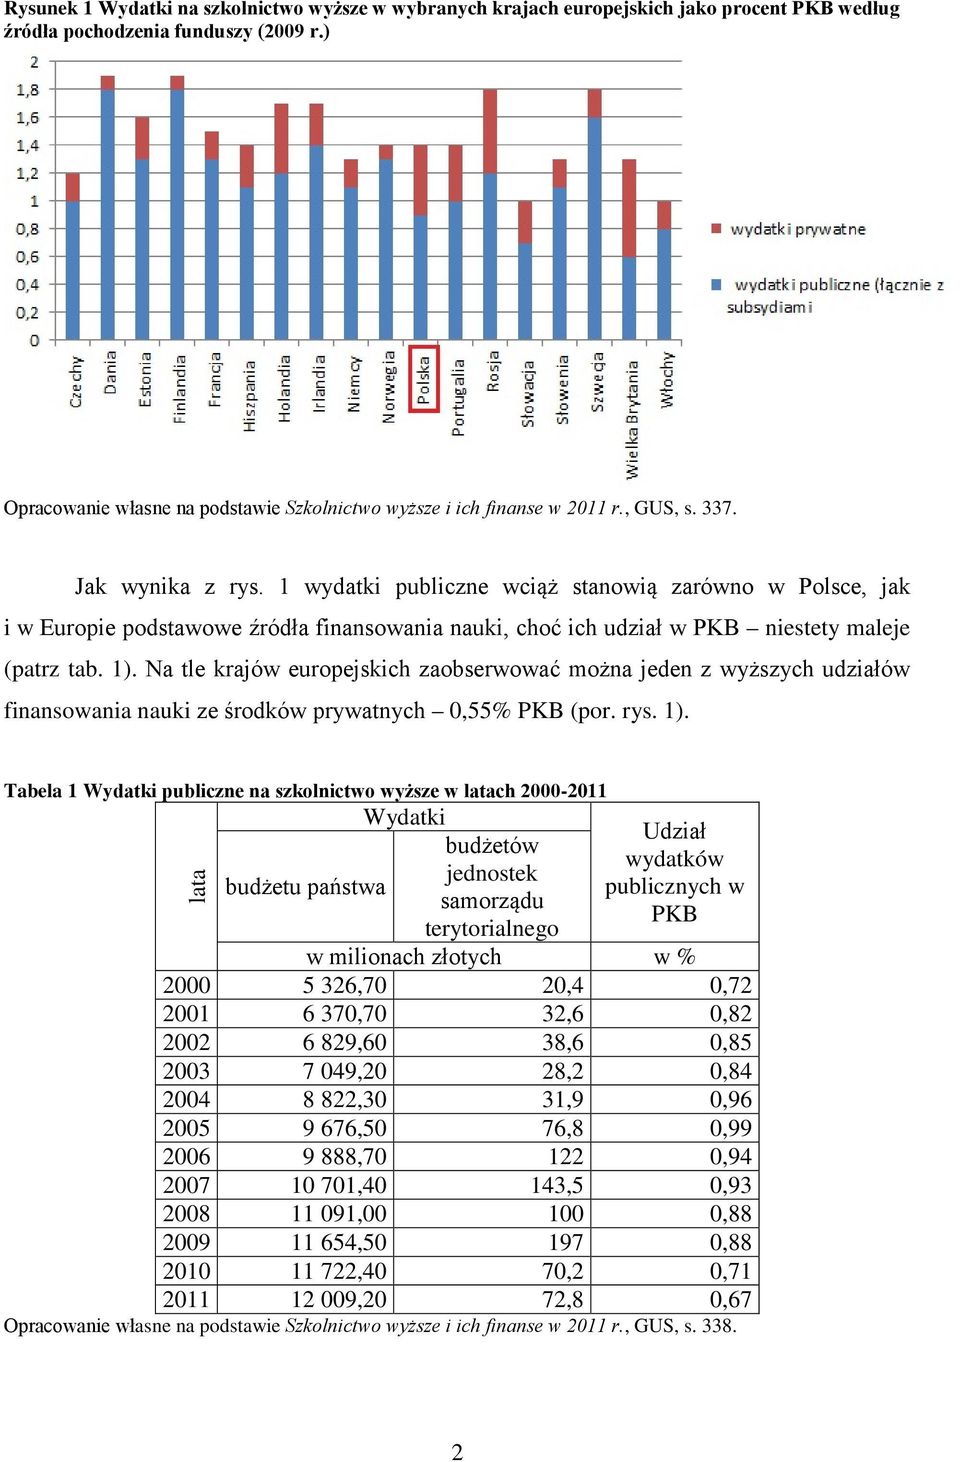 1 wydatki publiczne wciąż stanowią zarówno w Polsce, jak i w Europie podstawowe źródła finansowania nauki, choć ich udział w PKB niestety maleje (patrz tab. 1).